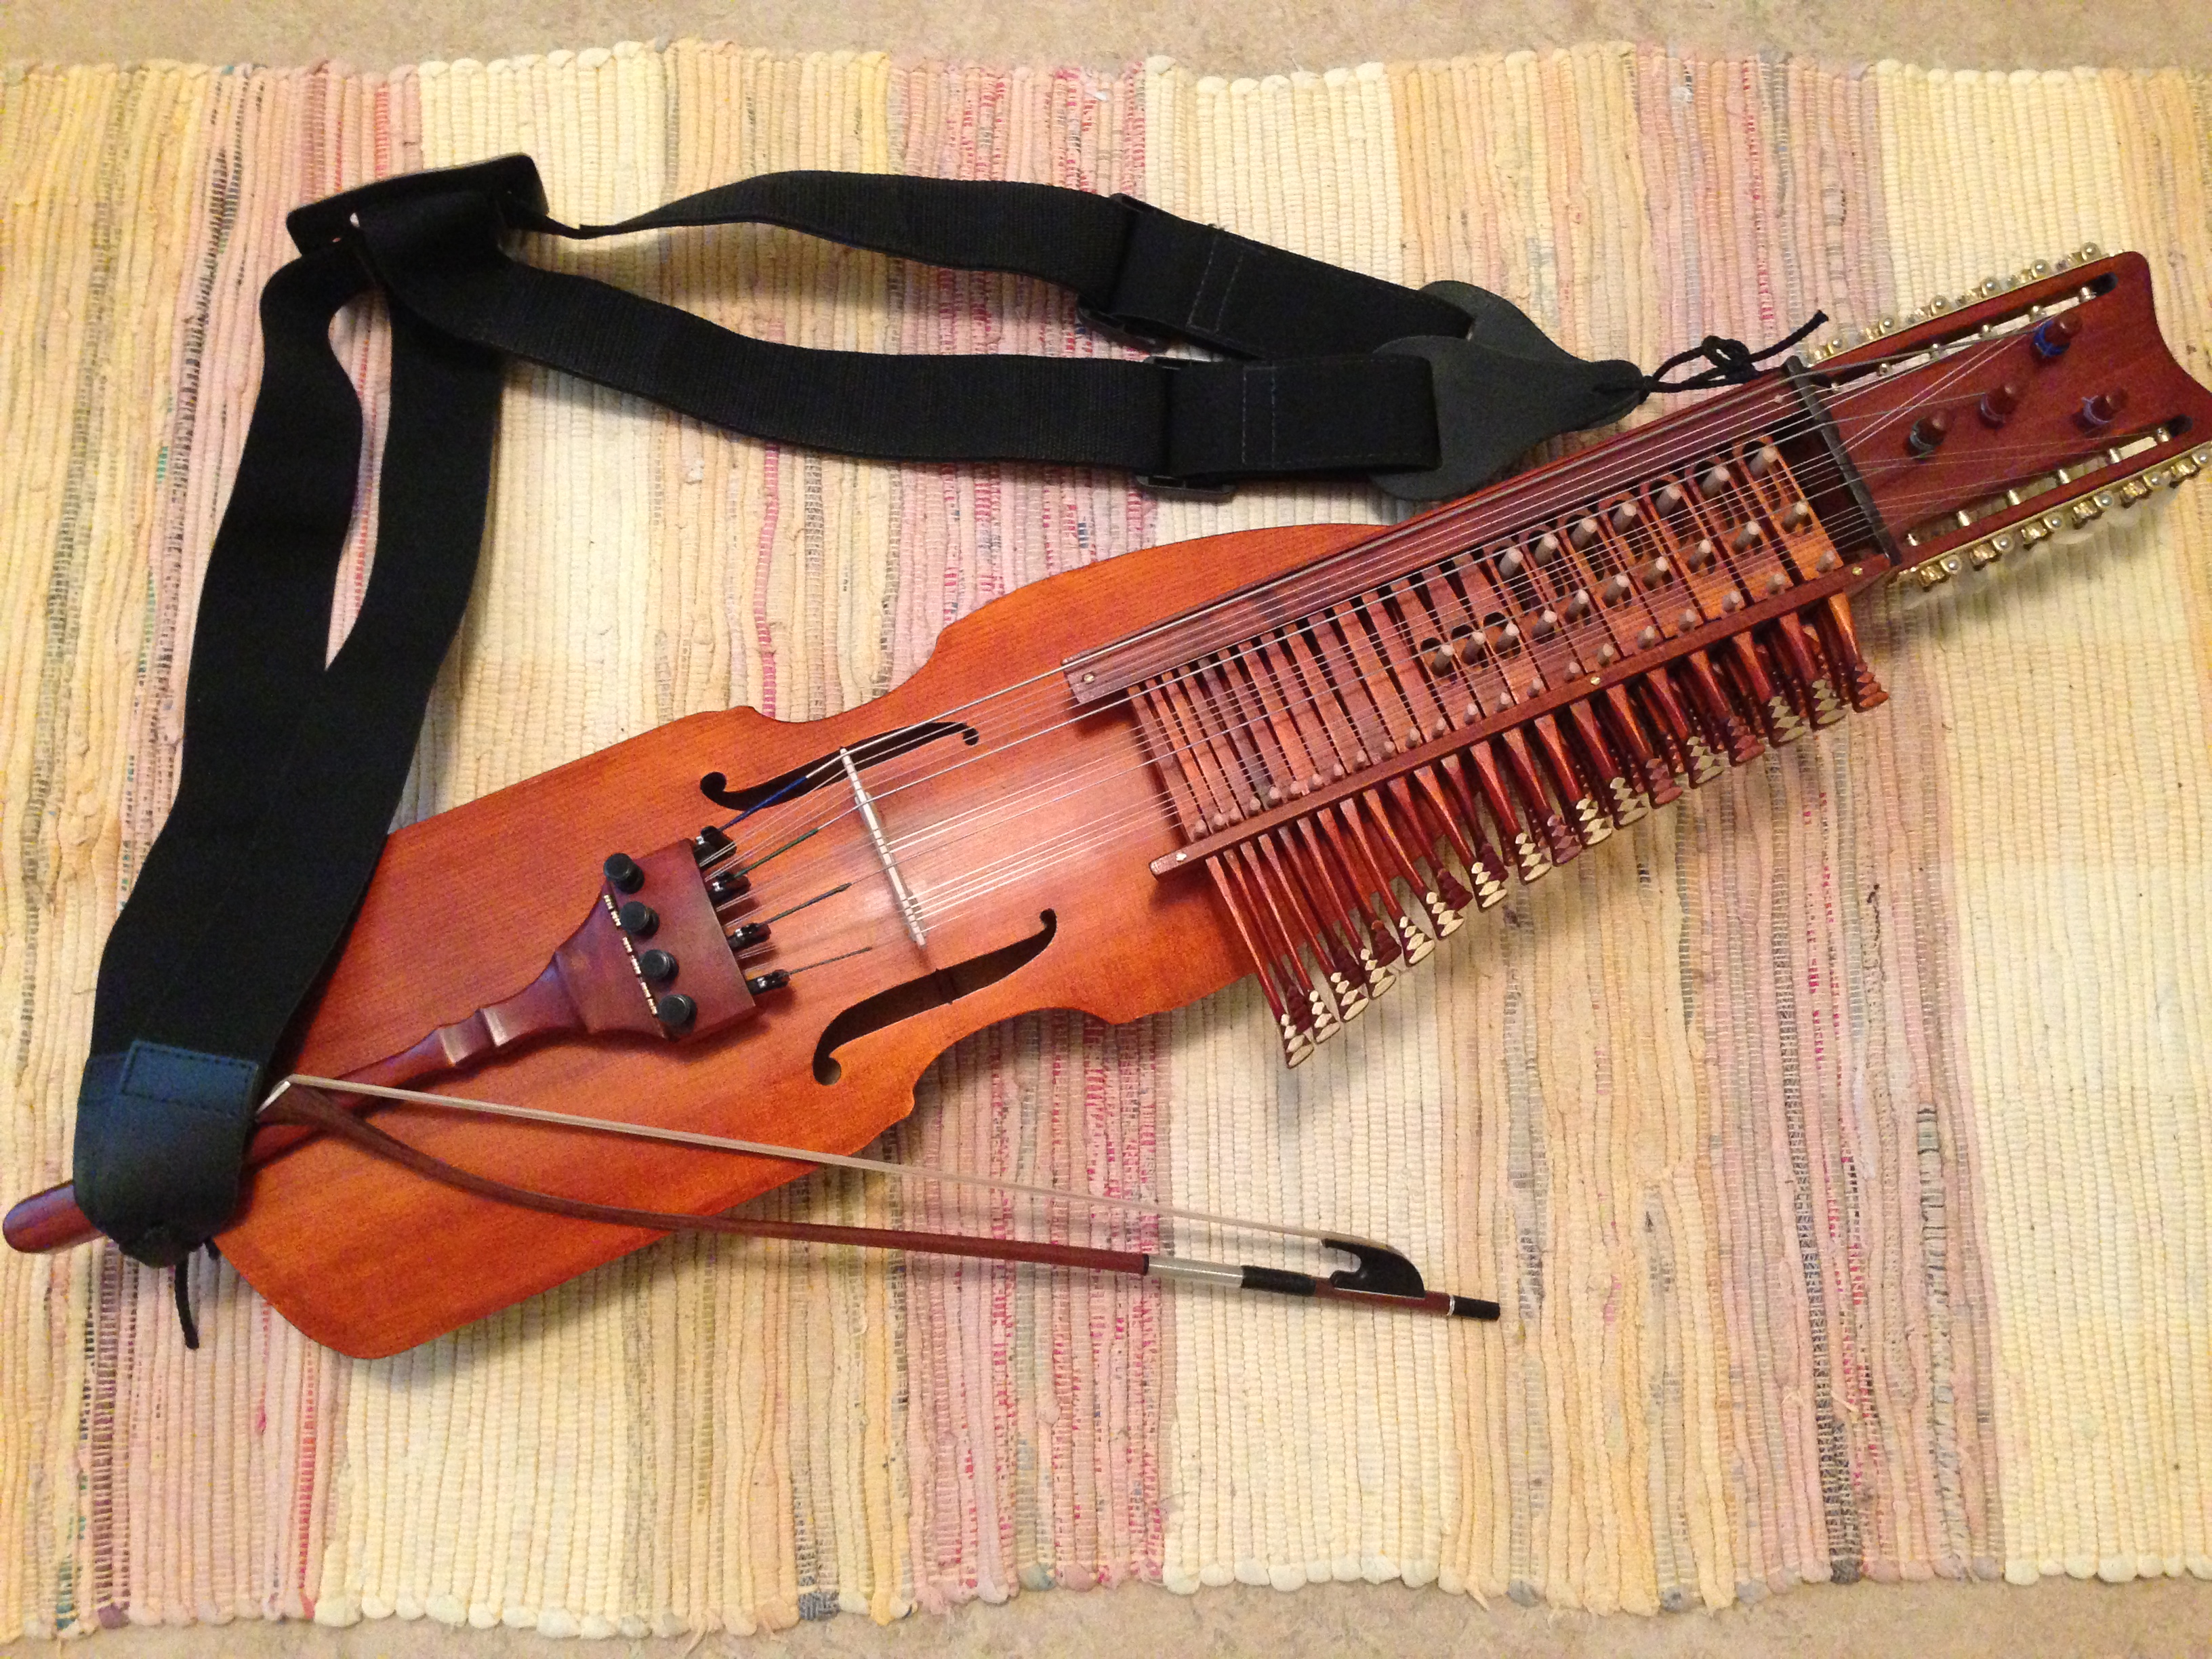 Самый масштабный музыкальный инструмент москвы. Никельхарпа инструмент никельхарпа. Кикель Харпа музыкальный инструмент. Никельхарпа из Ситара. Никельхарпа шведская клавишная скрипка.